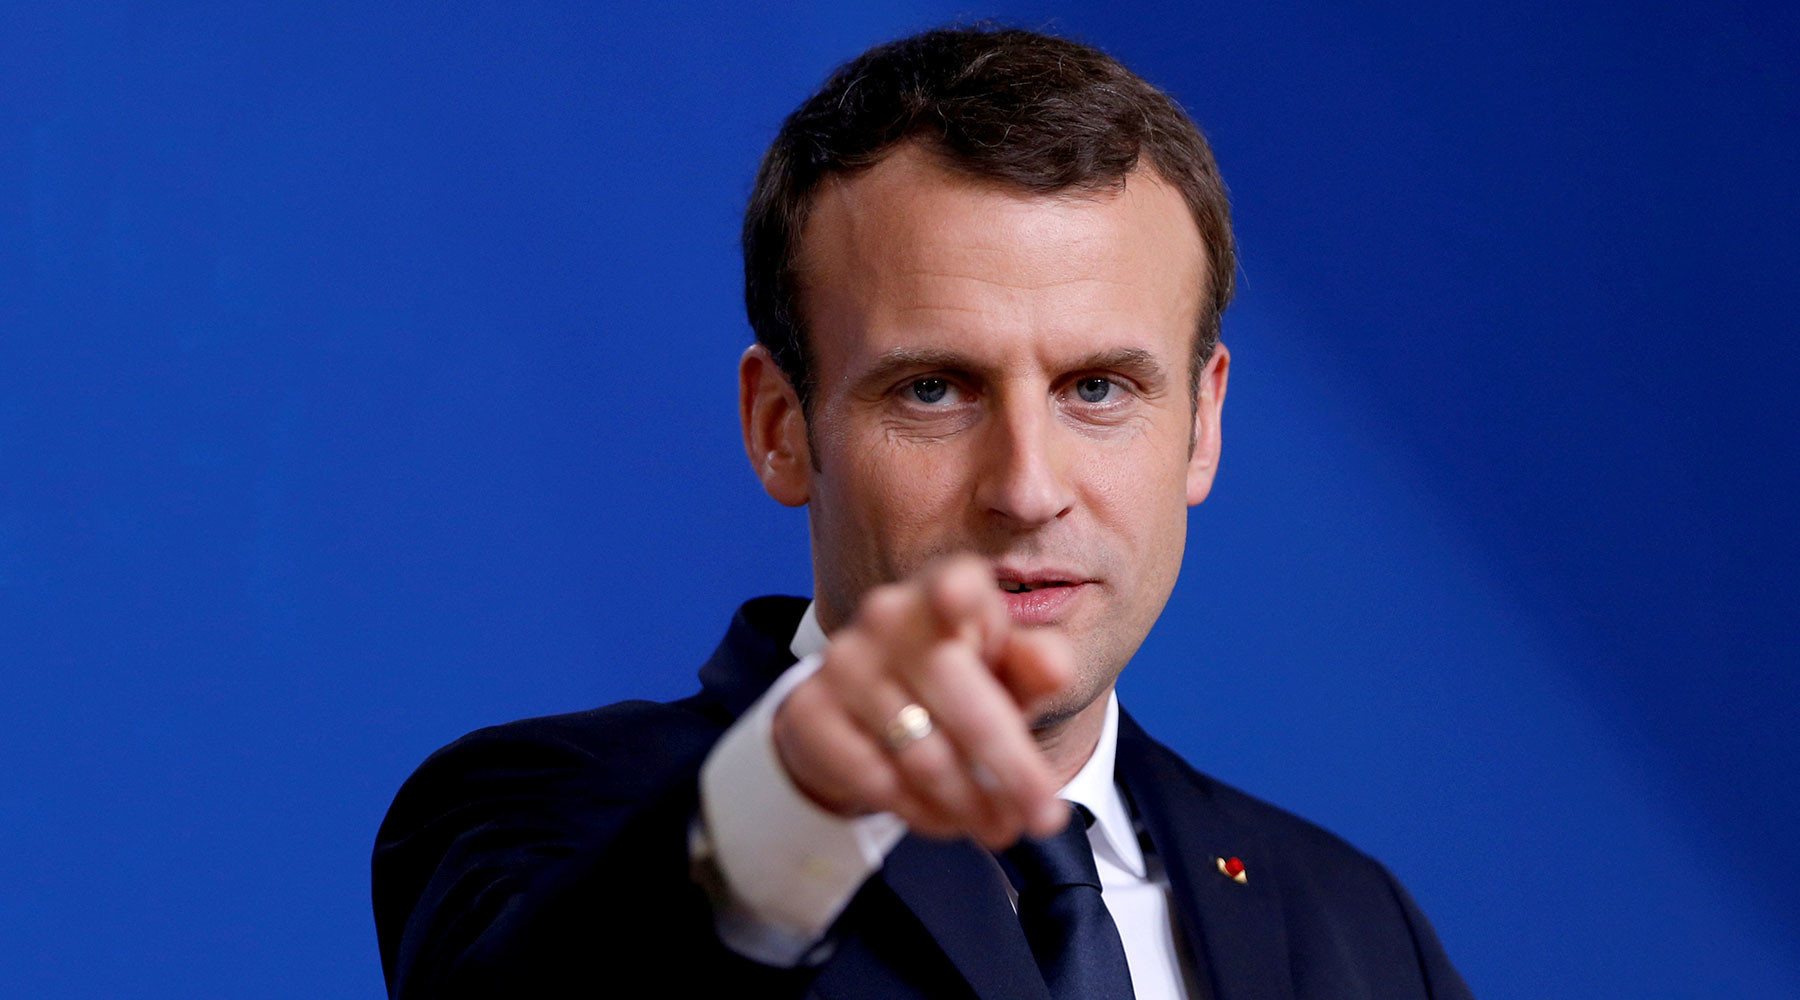  Франция может нанести удар по Сирии вместе с США